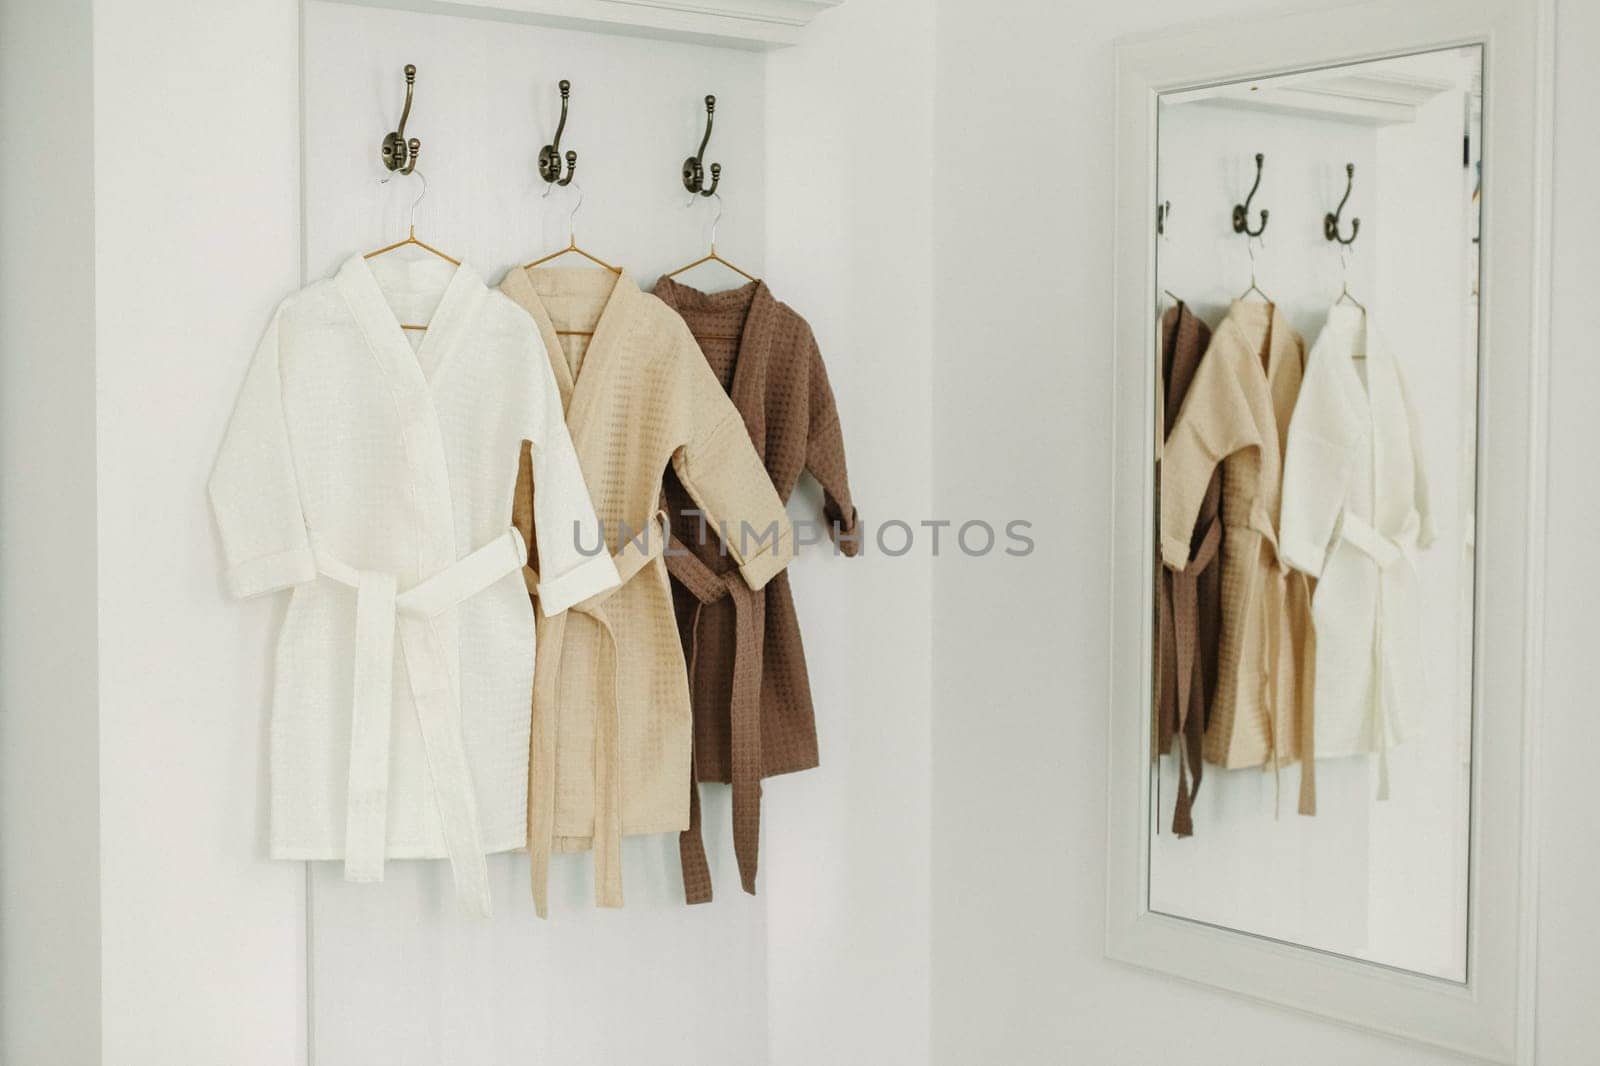 clothes, bathrobe, hangs on a hanger by Sd28DimoN_1976